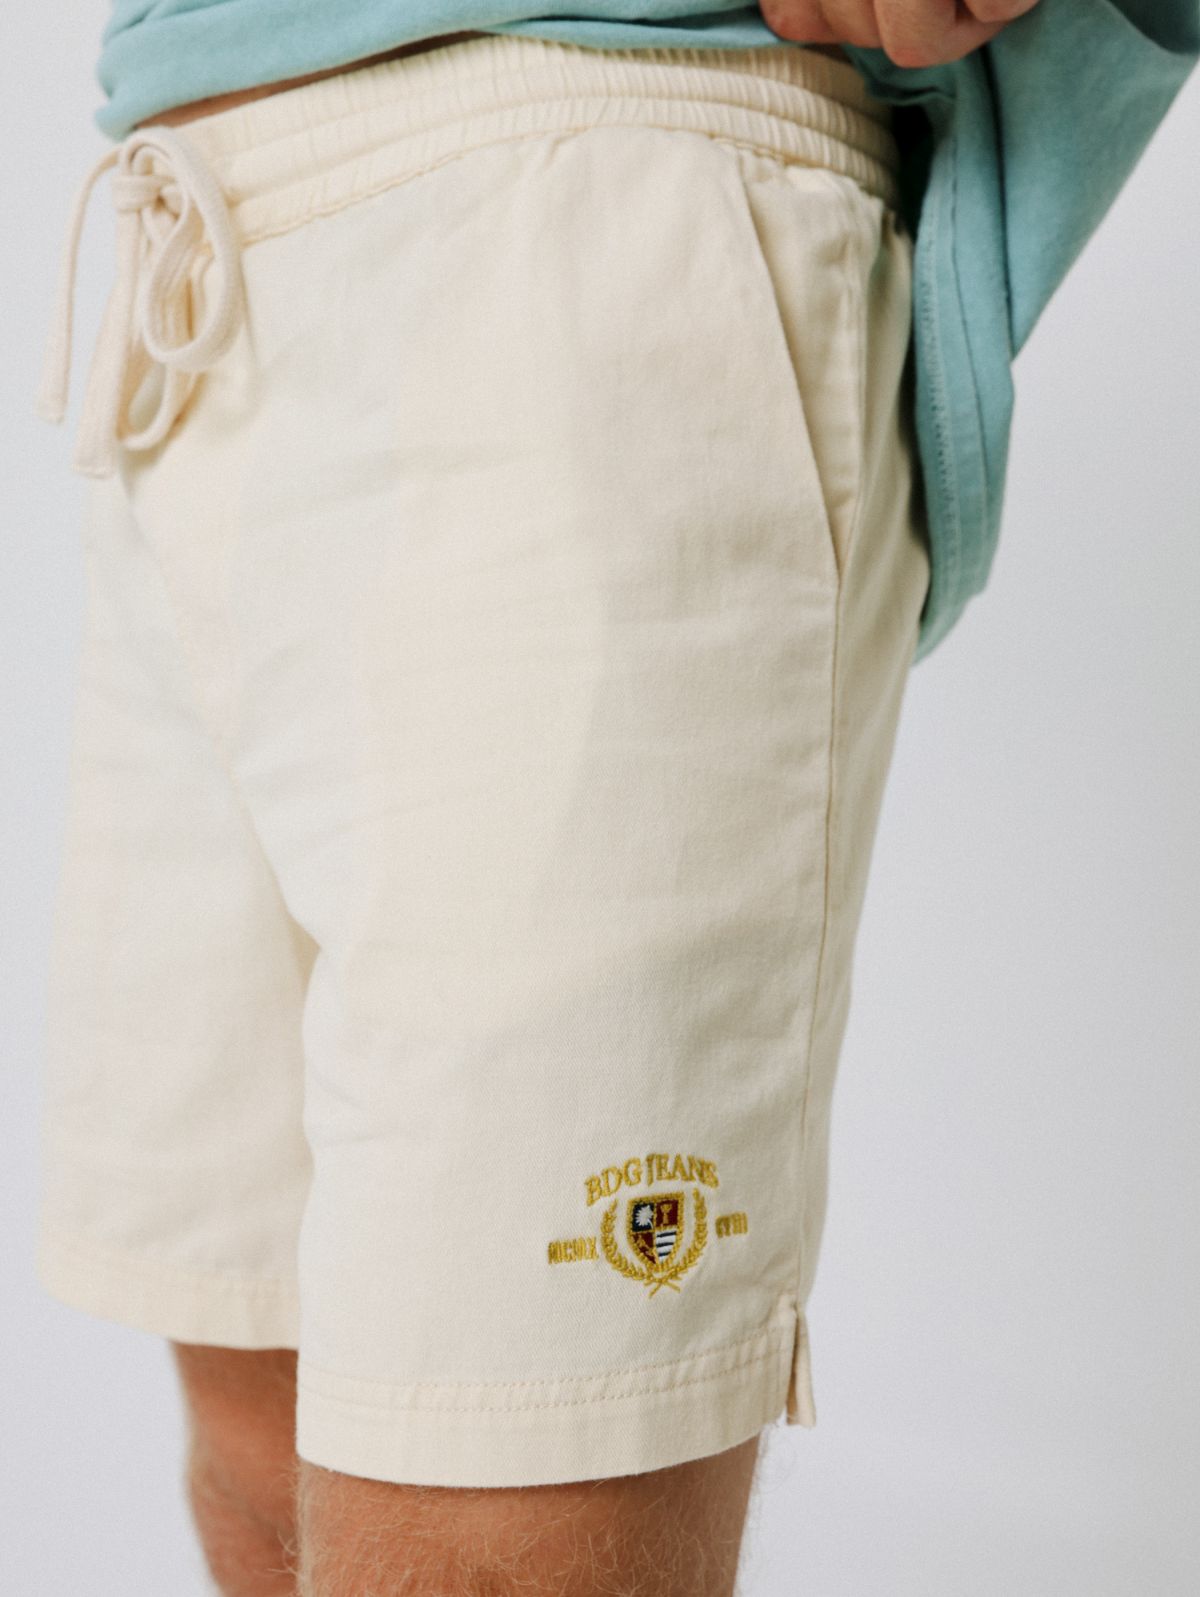  מכנסיים קצרים עם לוגו של URBAN OUTFITTERS